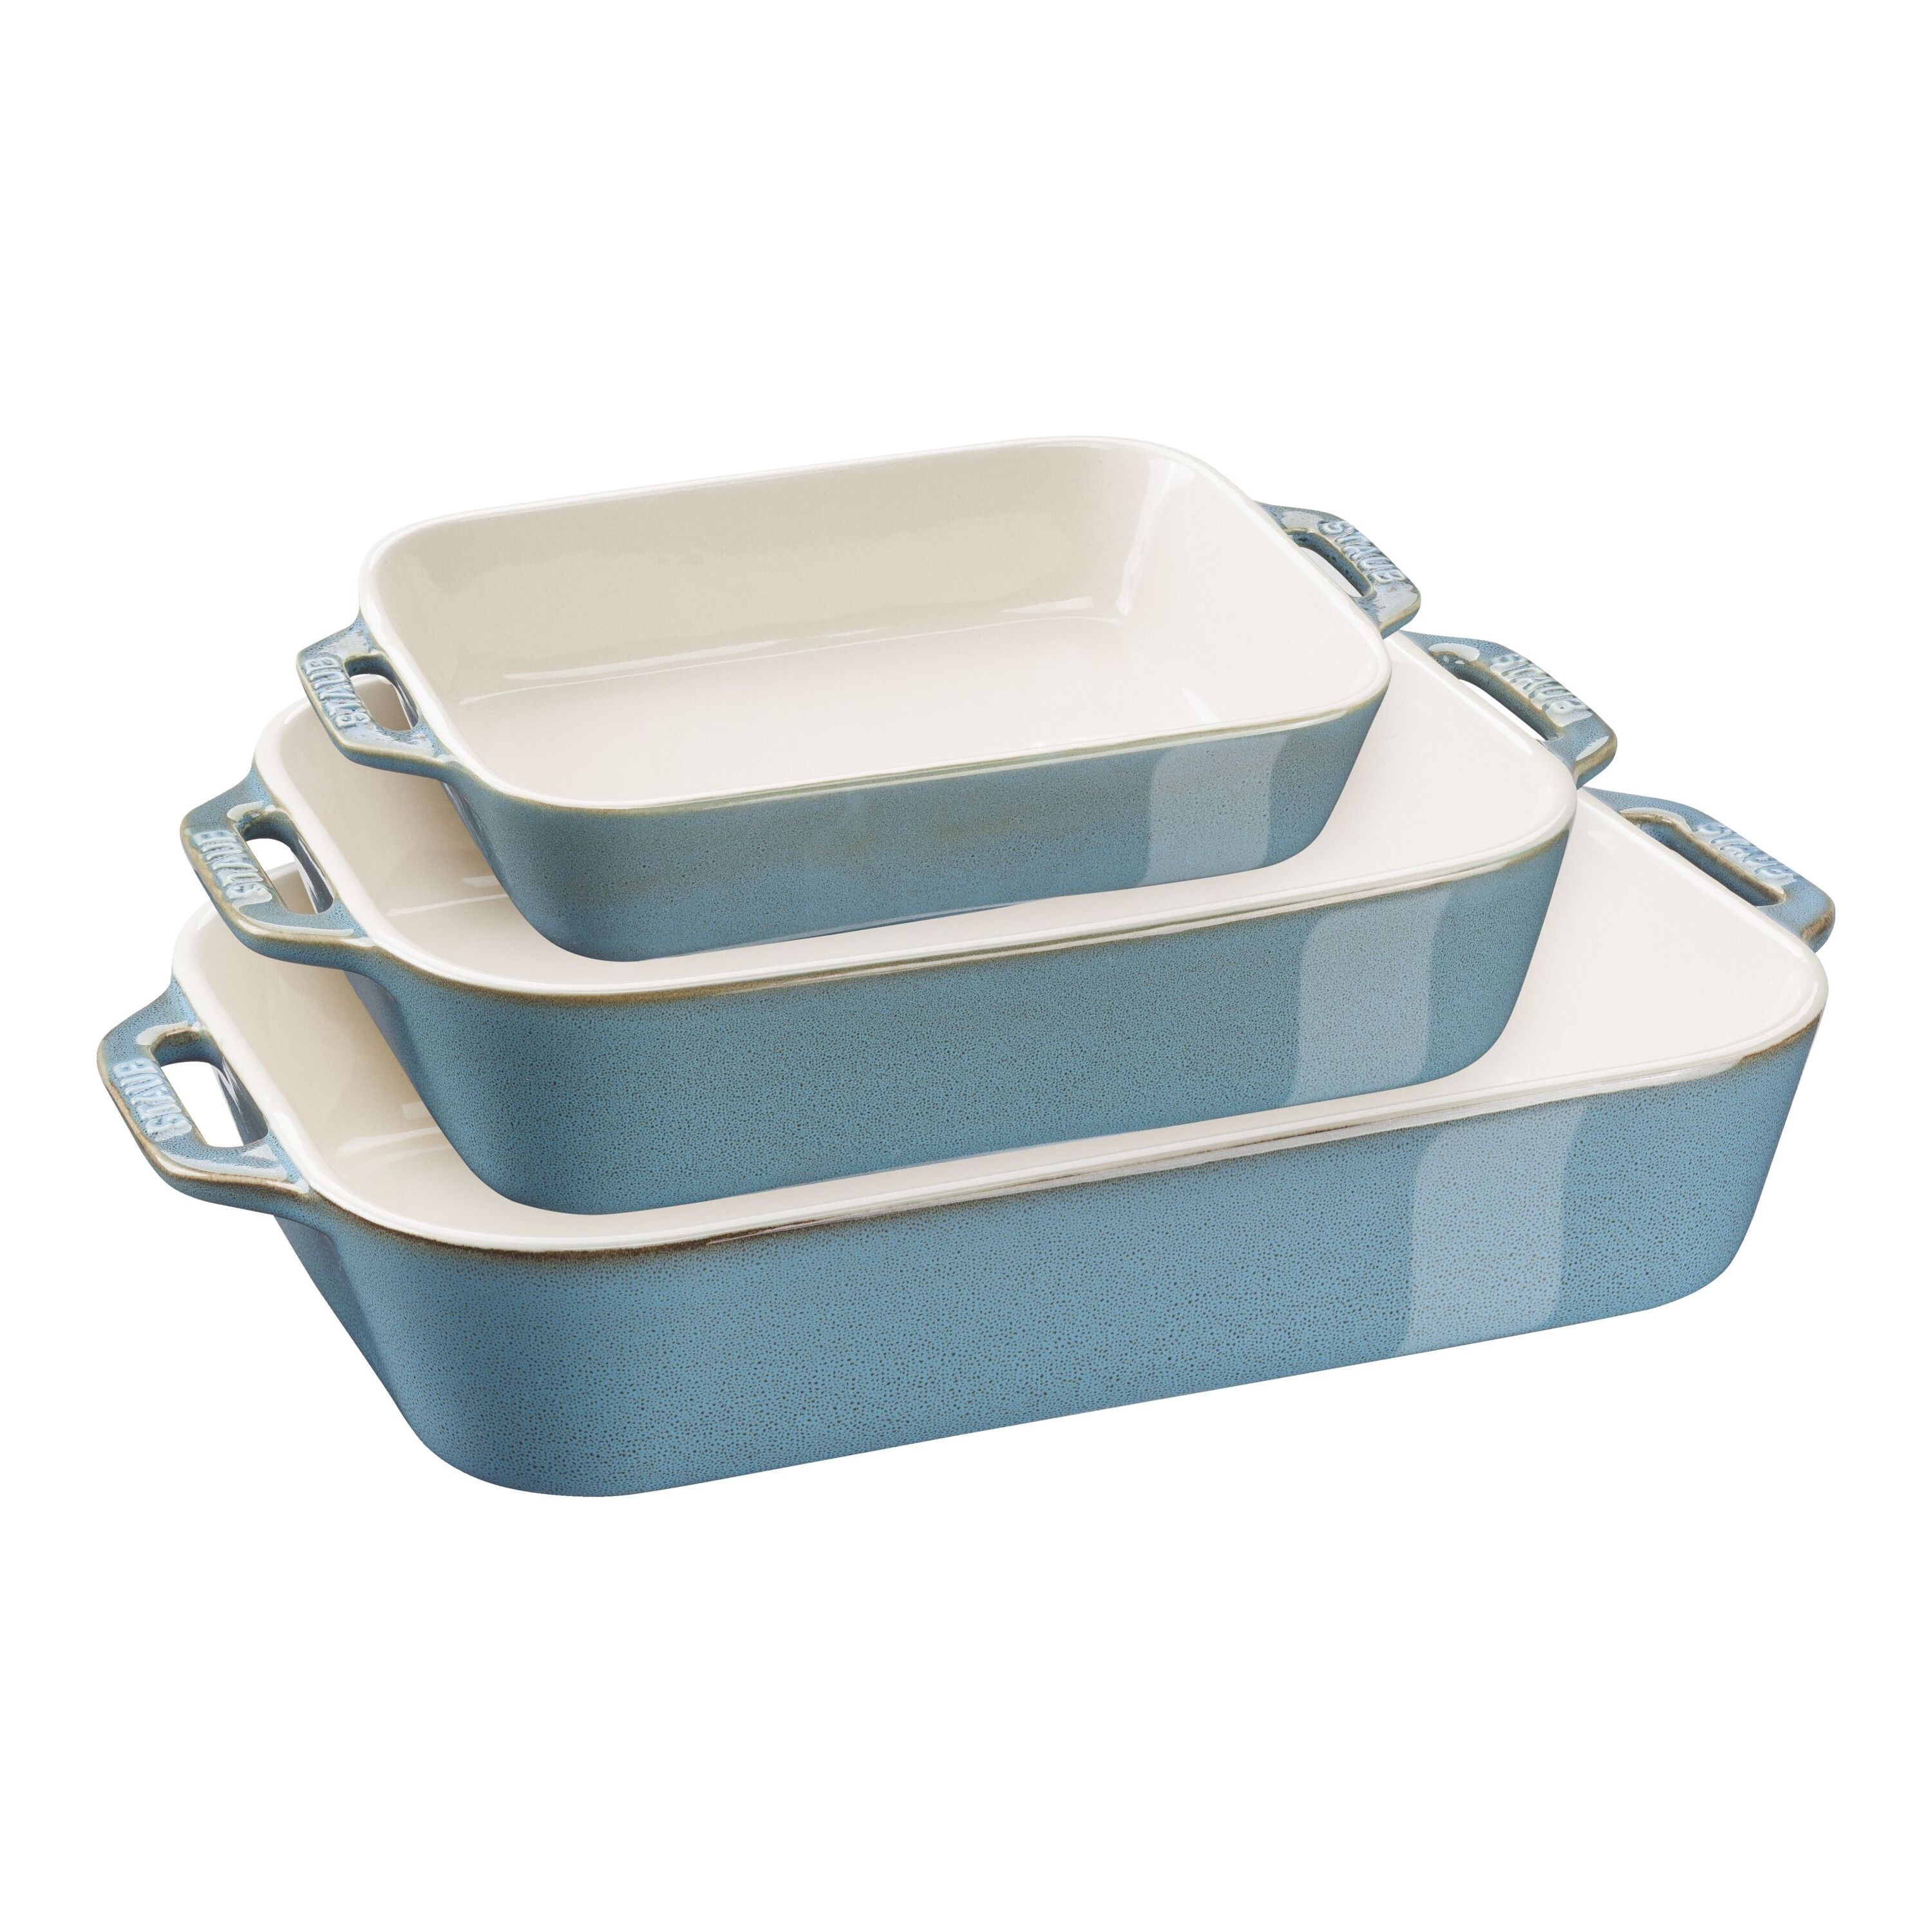 Staub Ceramics 3-pc Rectangular Baking Dish Set - Rustic Turquoise